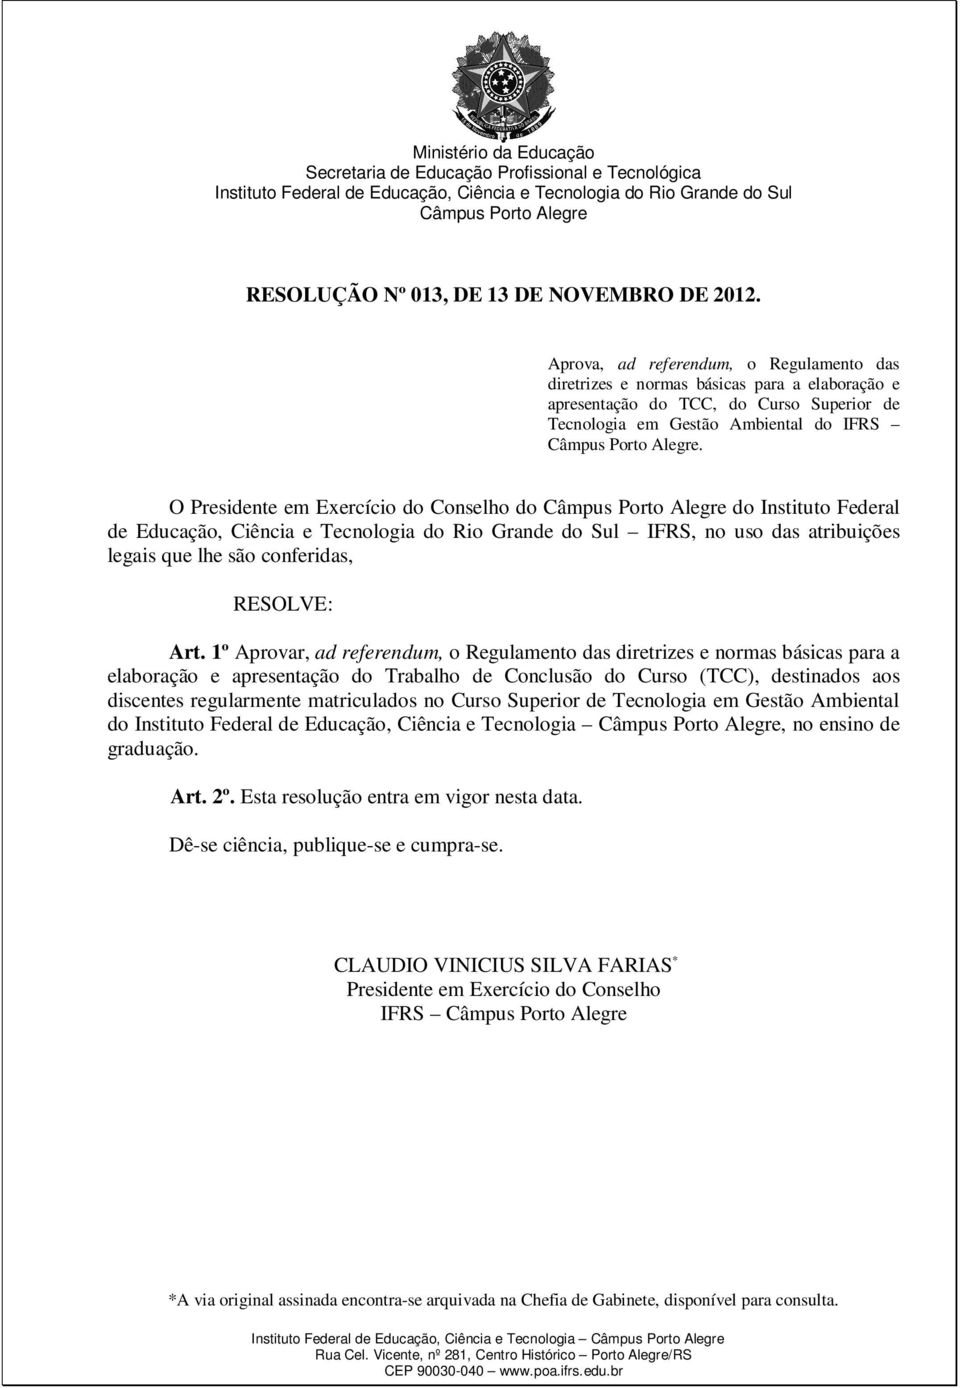 Aprova, ad referendum, o Regulamento das diretrizes e normas básicas para a elaboração e apresentação do TCC, do Curso Superior de Tecnologia em Gestão Ambiental do IFRS Câmpus Porto Alegre.